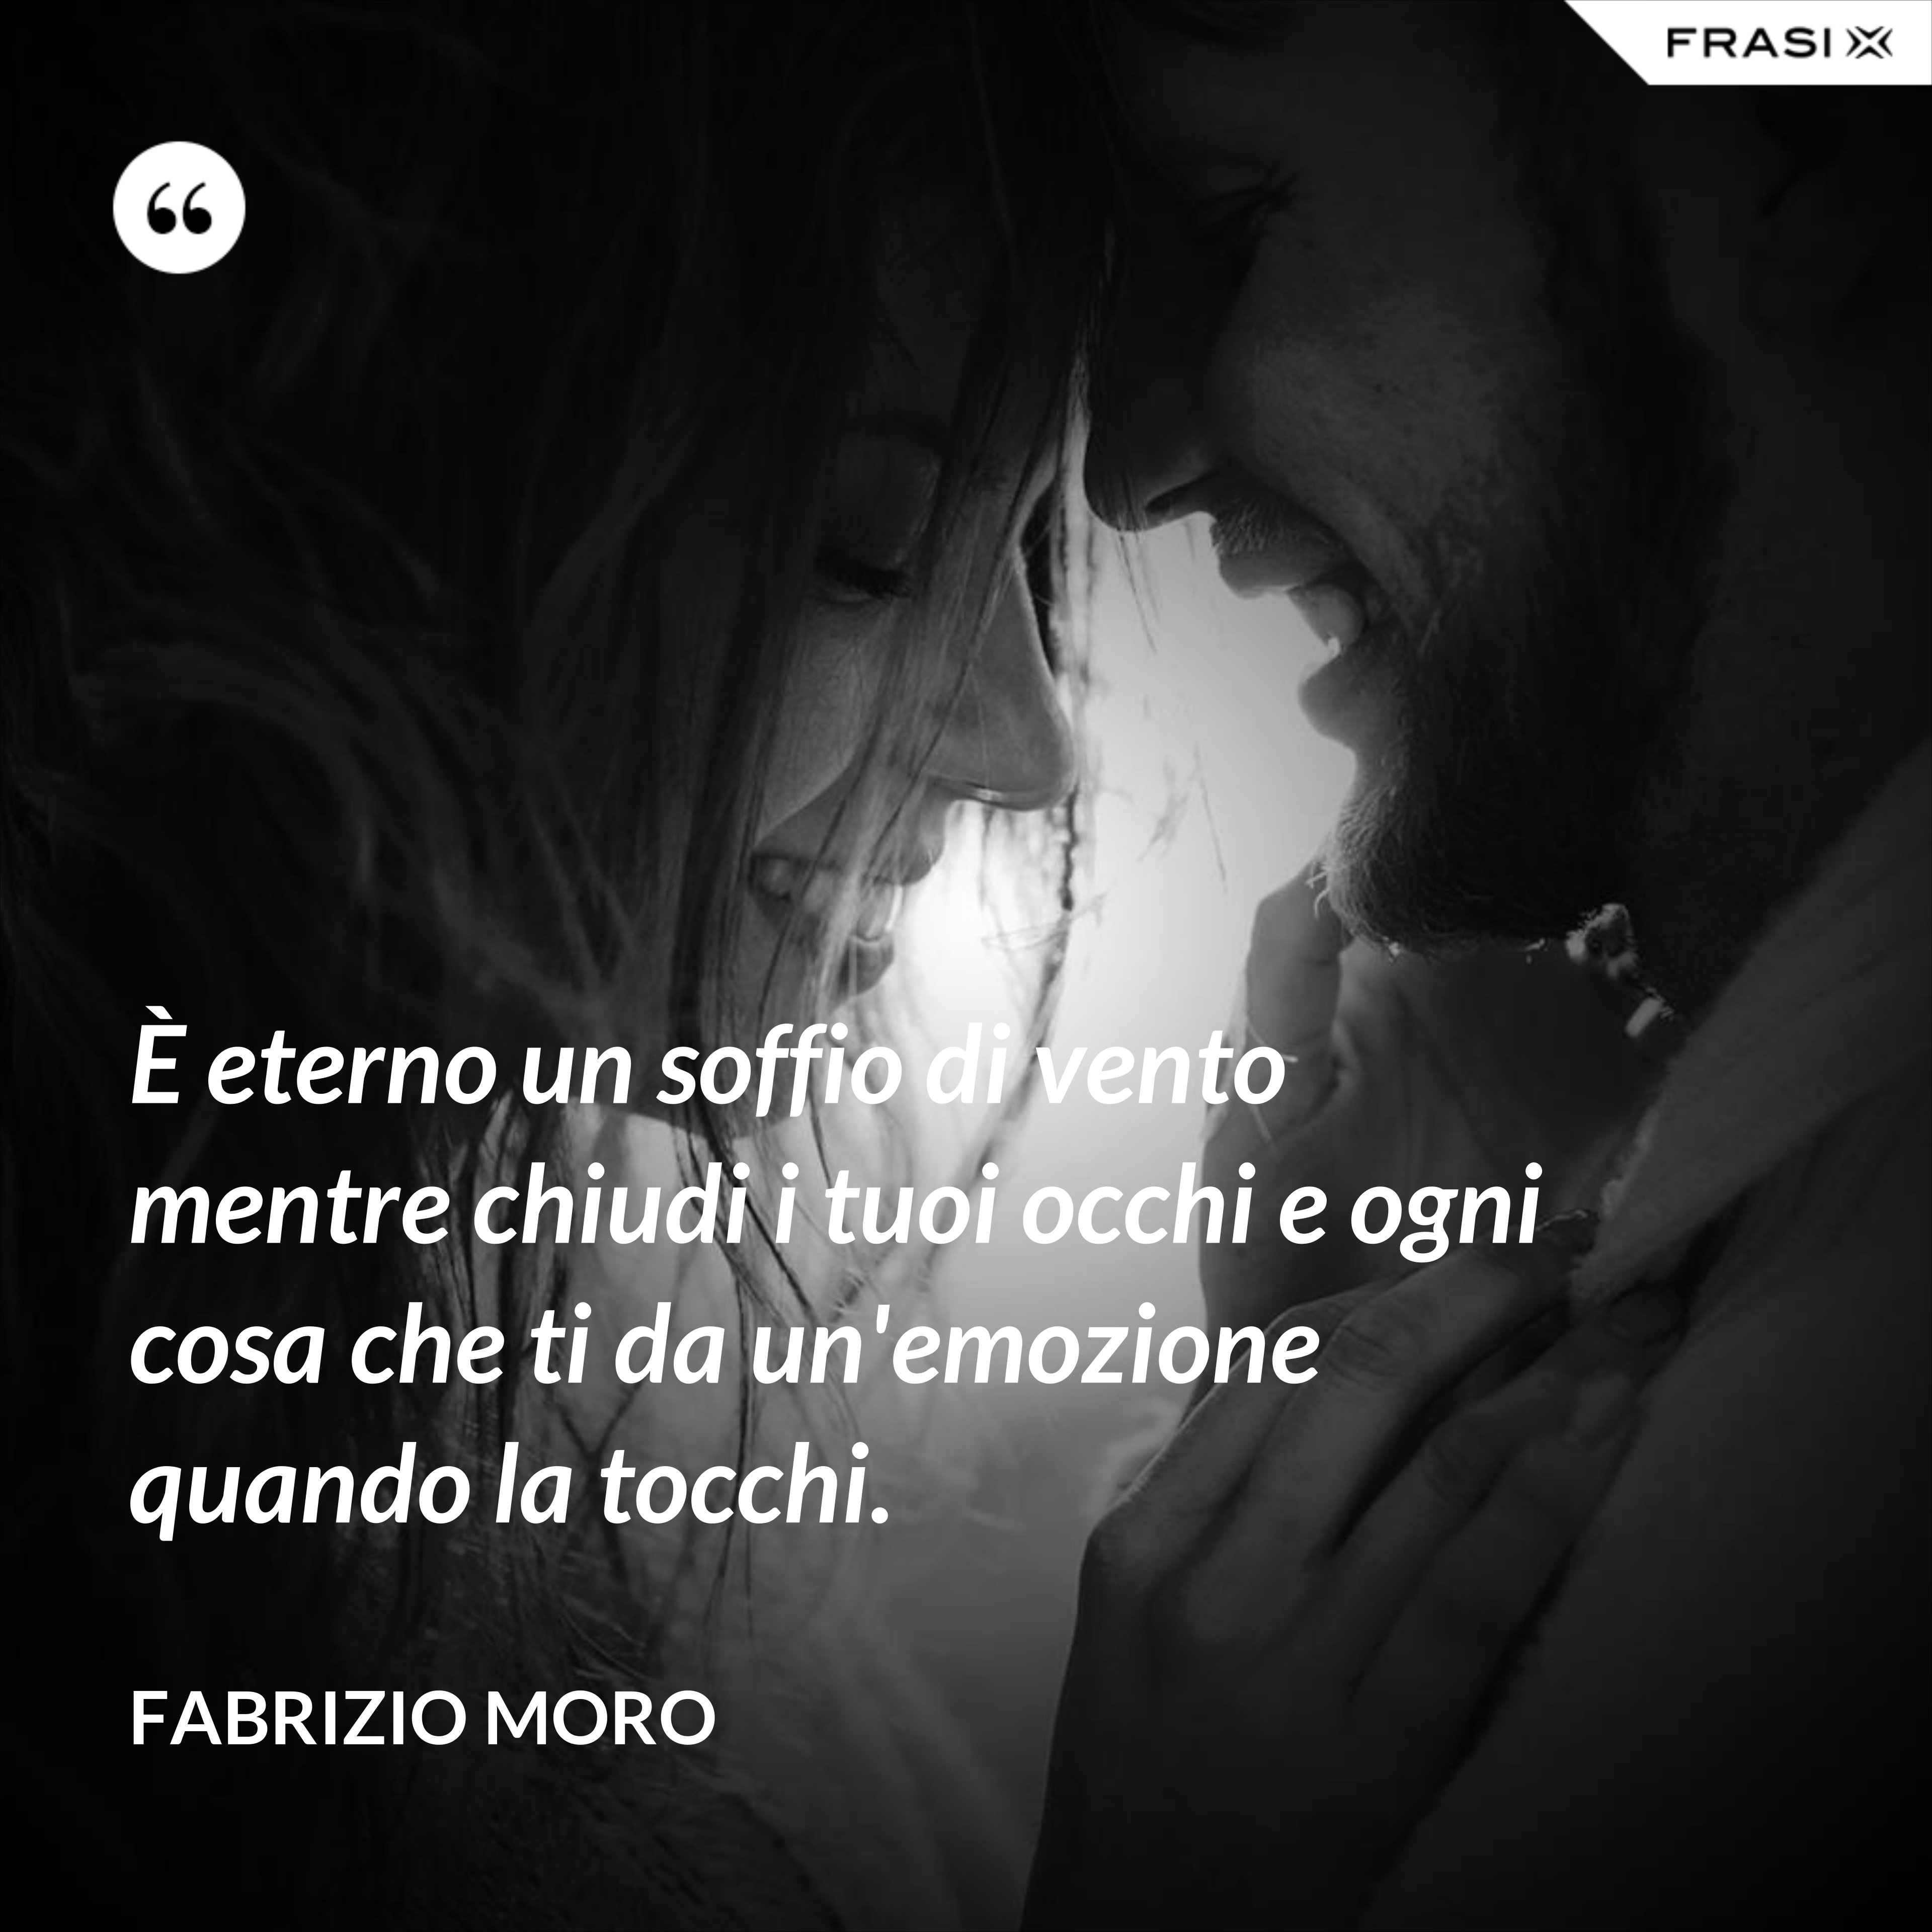 È eterno un soffio di vento mentre chiudi i tuoi occhi e ogni cosa che ti da un'emozione quando la tocchi. - Fabrizio Moro